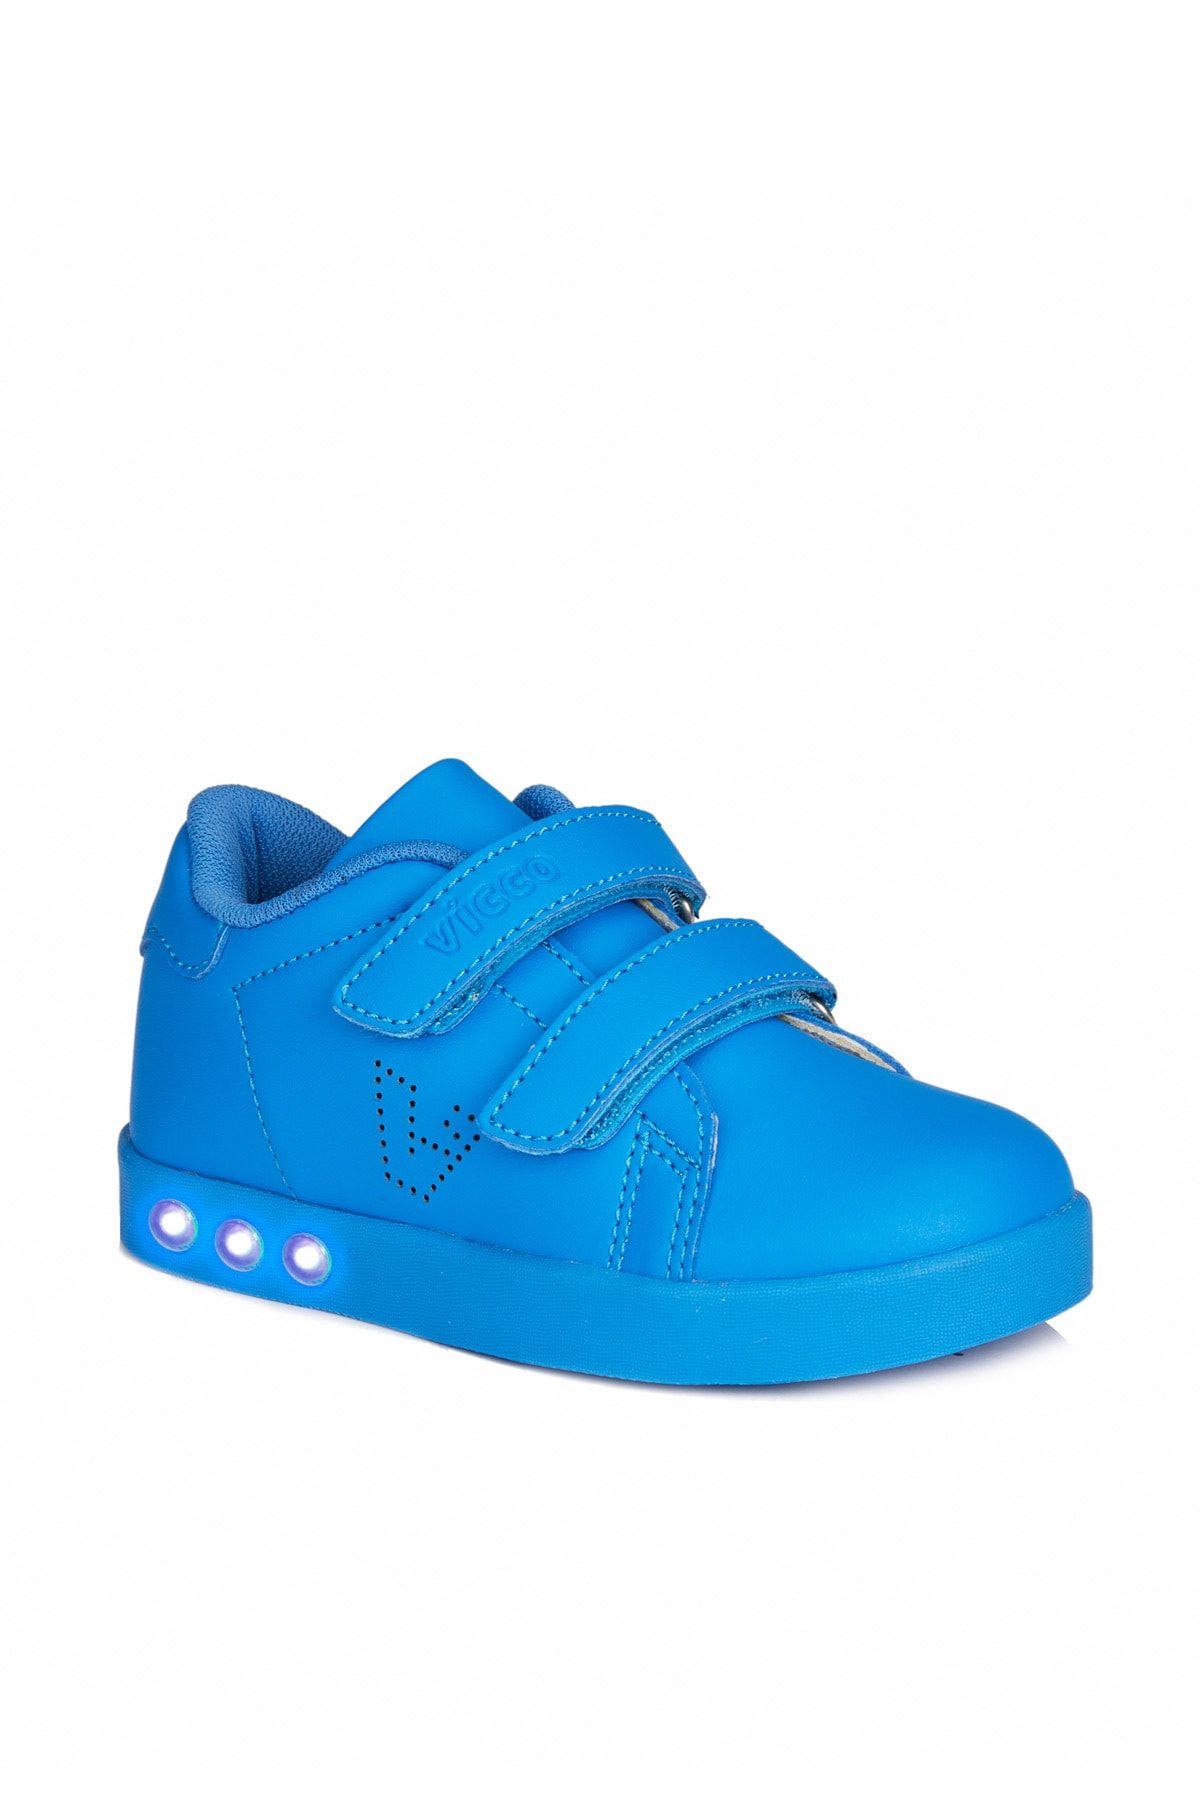 Vicco Oyo Sneaker Saks Mavi Erkek Çocuk Işıklı Spor Ayakkabı